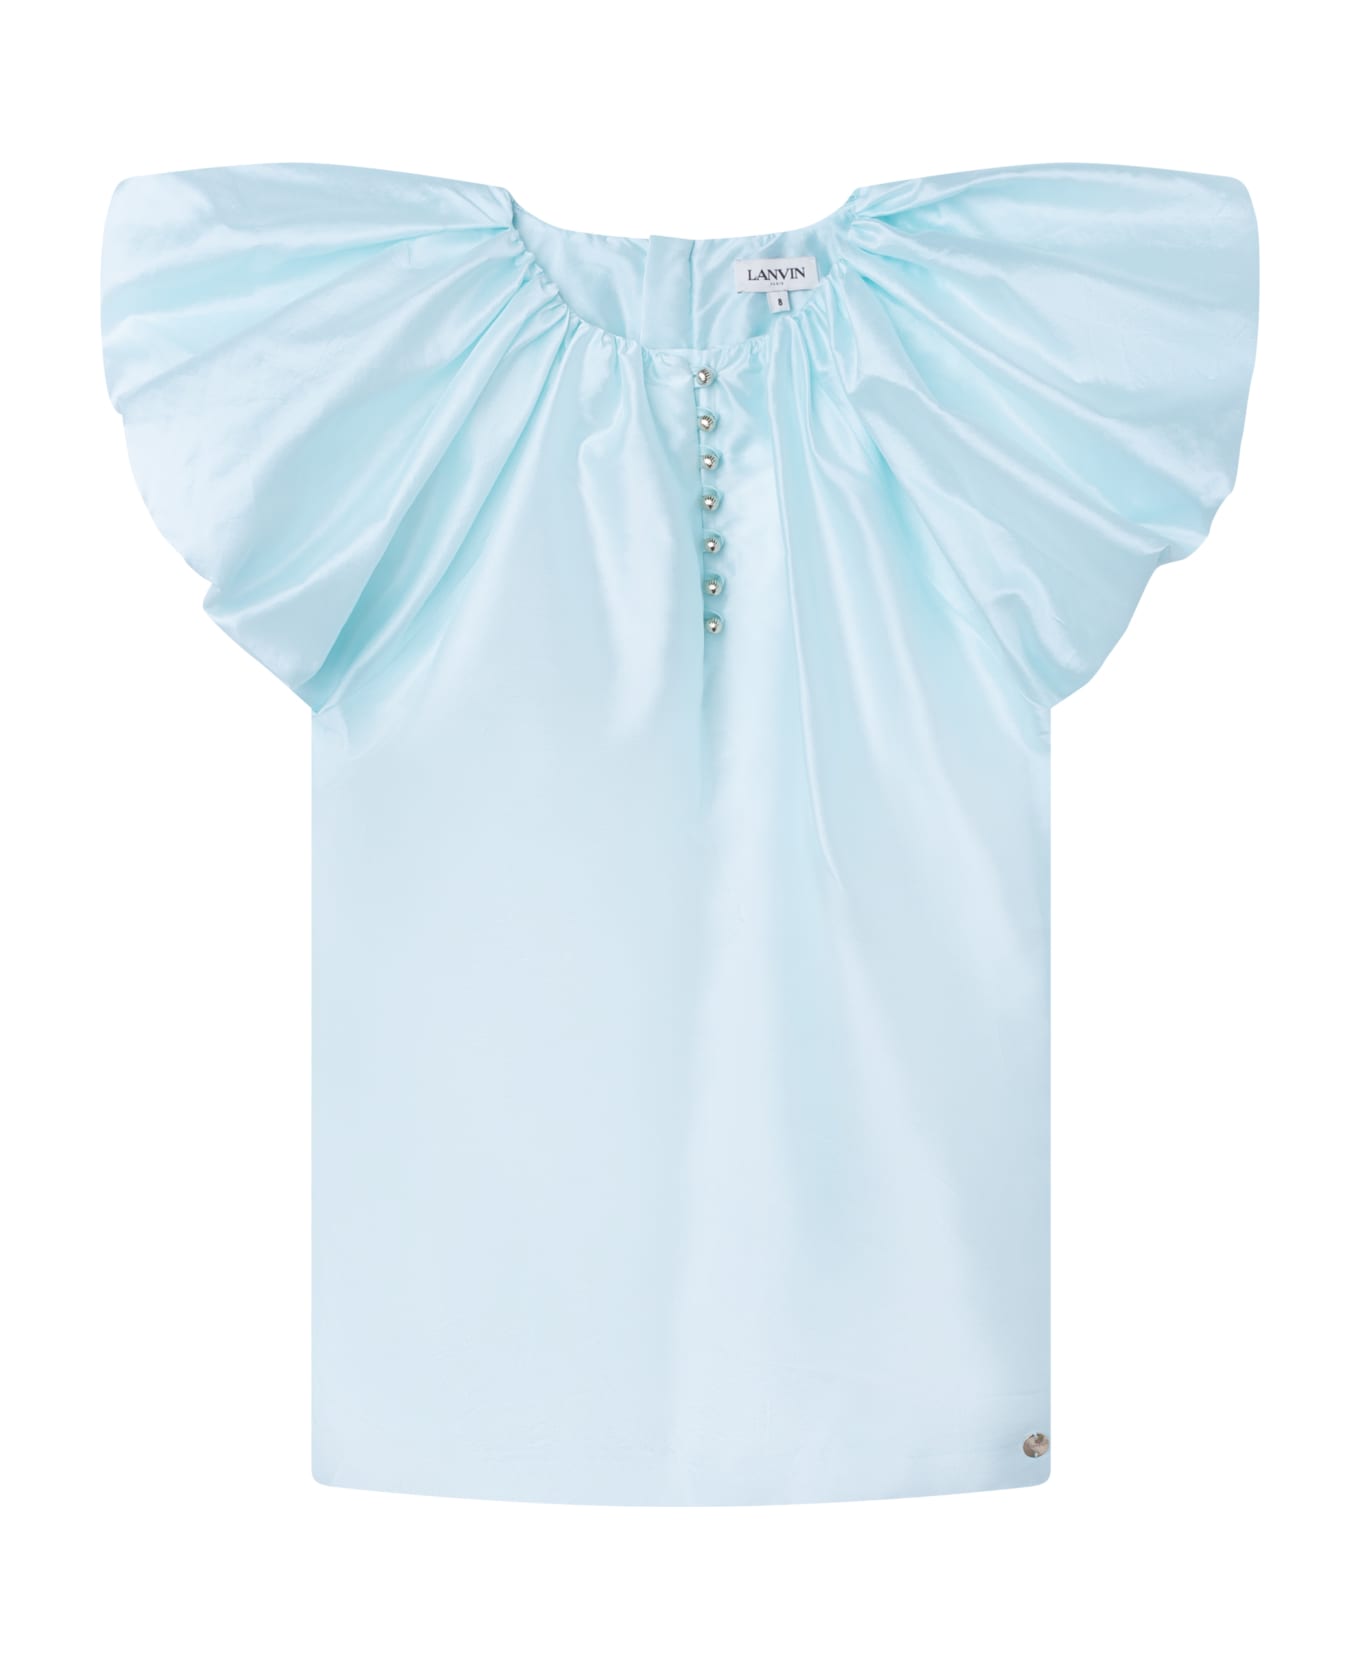 Lanvin Dress With Balloon Shirt - Light blue